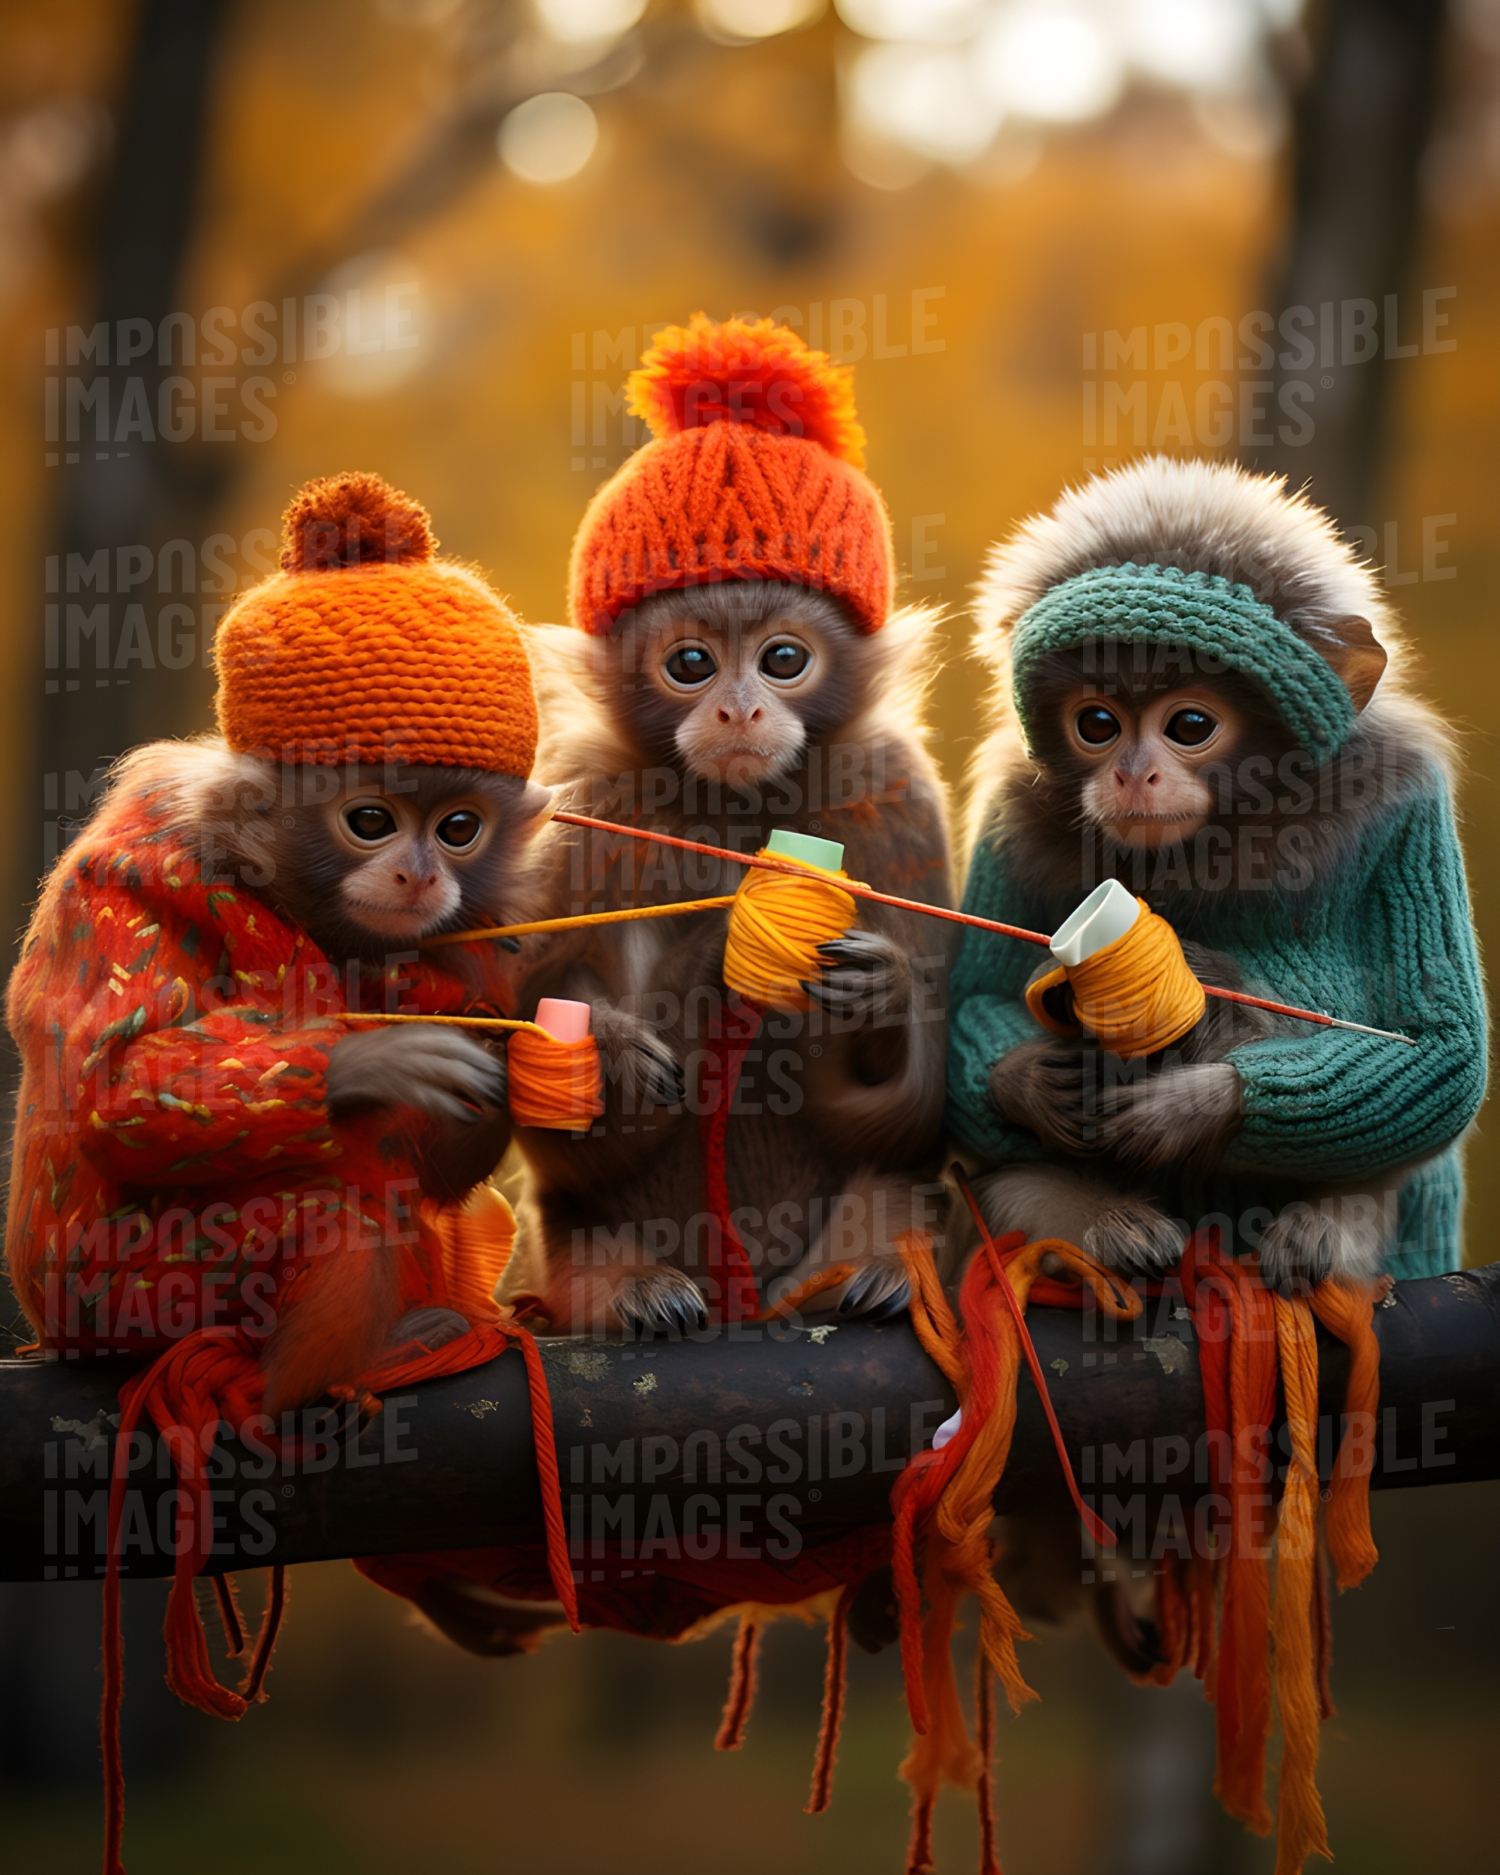 Monkeys knitting in a tree